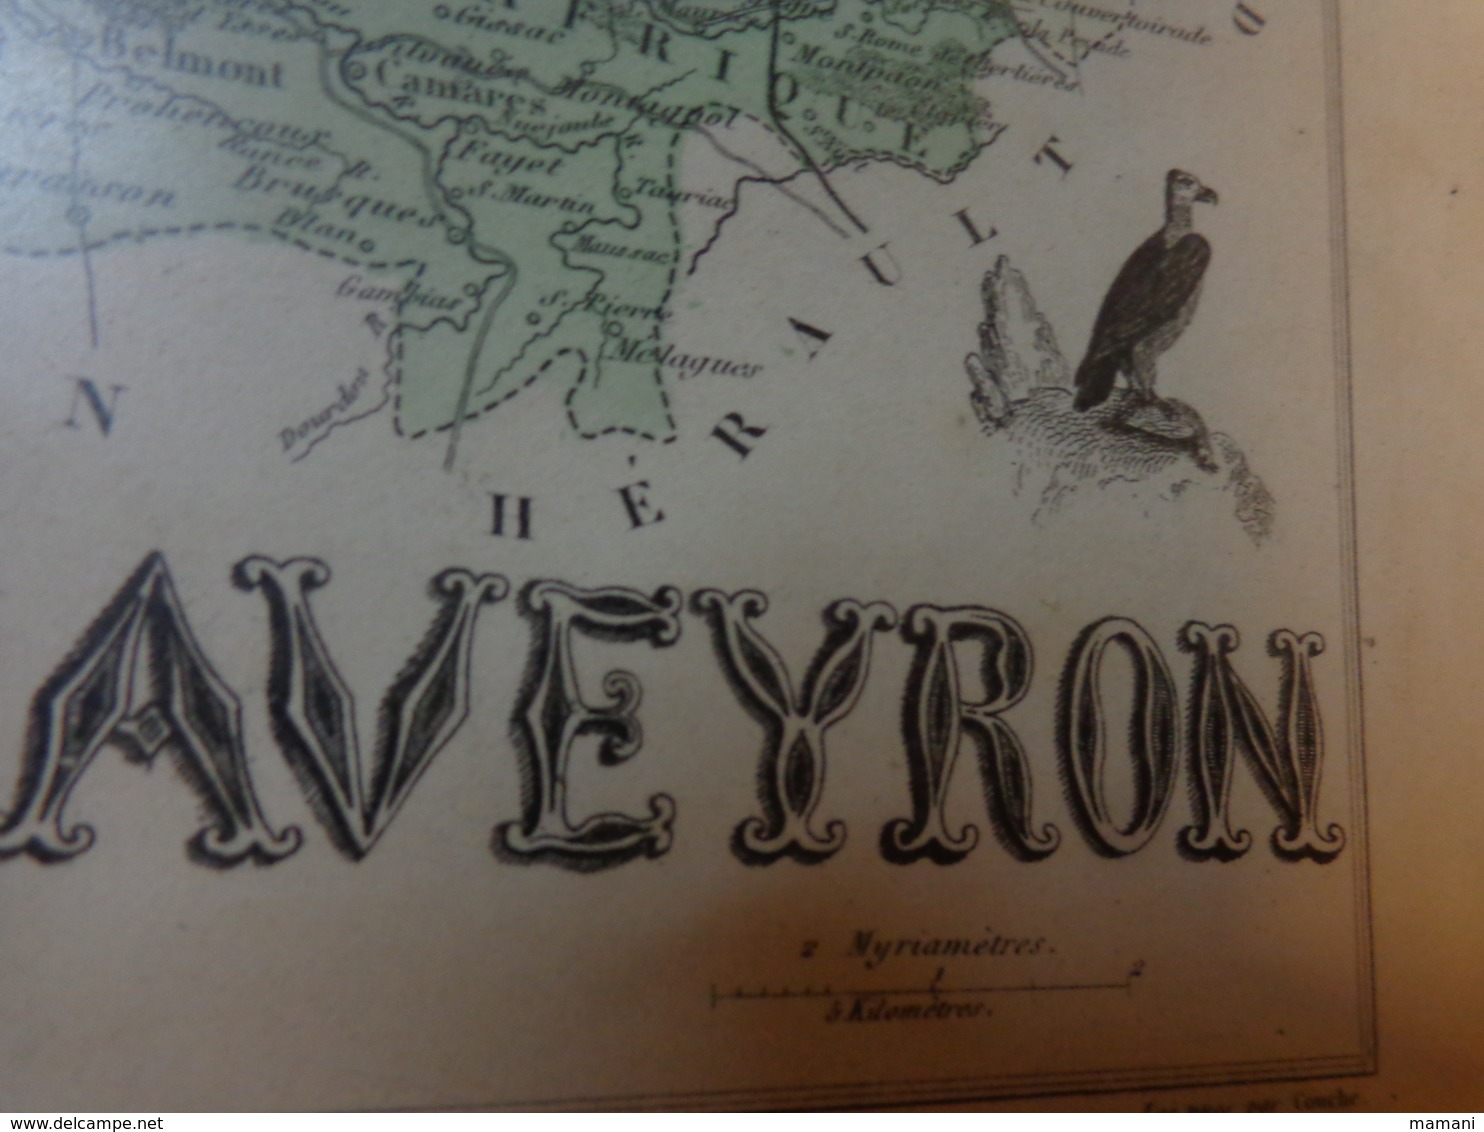 Carte géographique du département de l'aveyron (XIX° s.), dressée par Vuillemin et gravée par Ch. Dyonnet -encadre